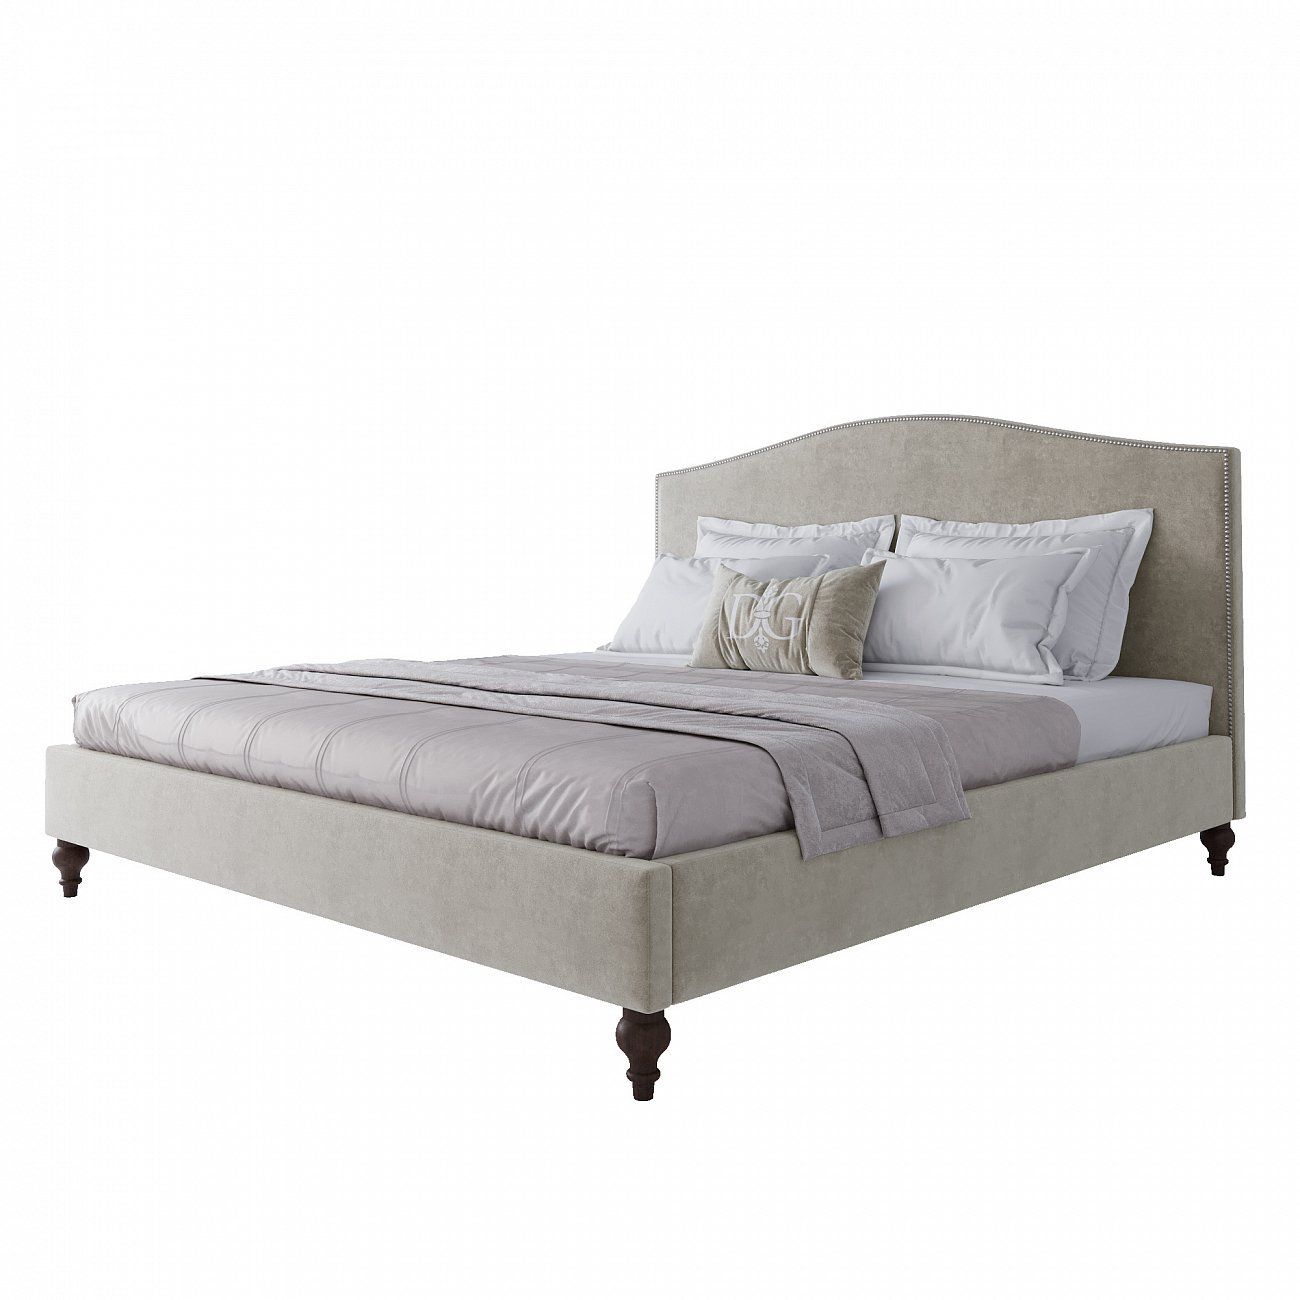 Double bed 180x200 cm grey-beige Fleurie